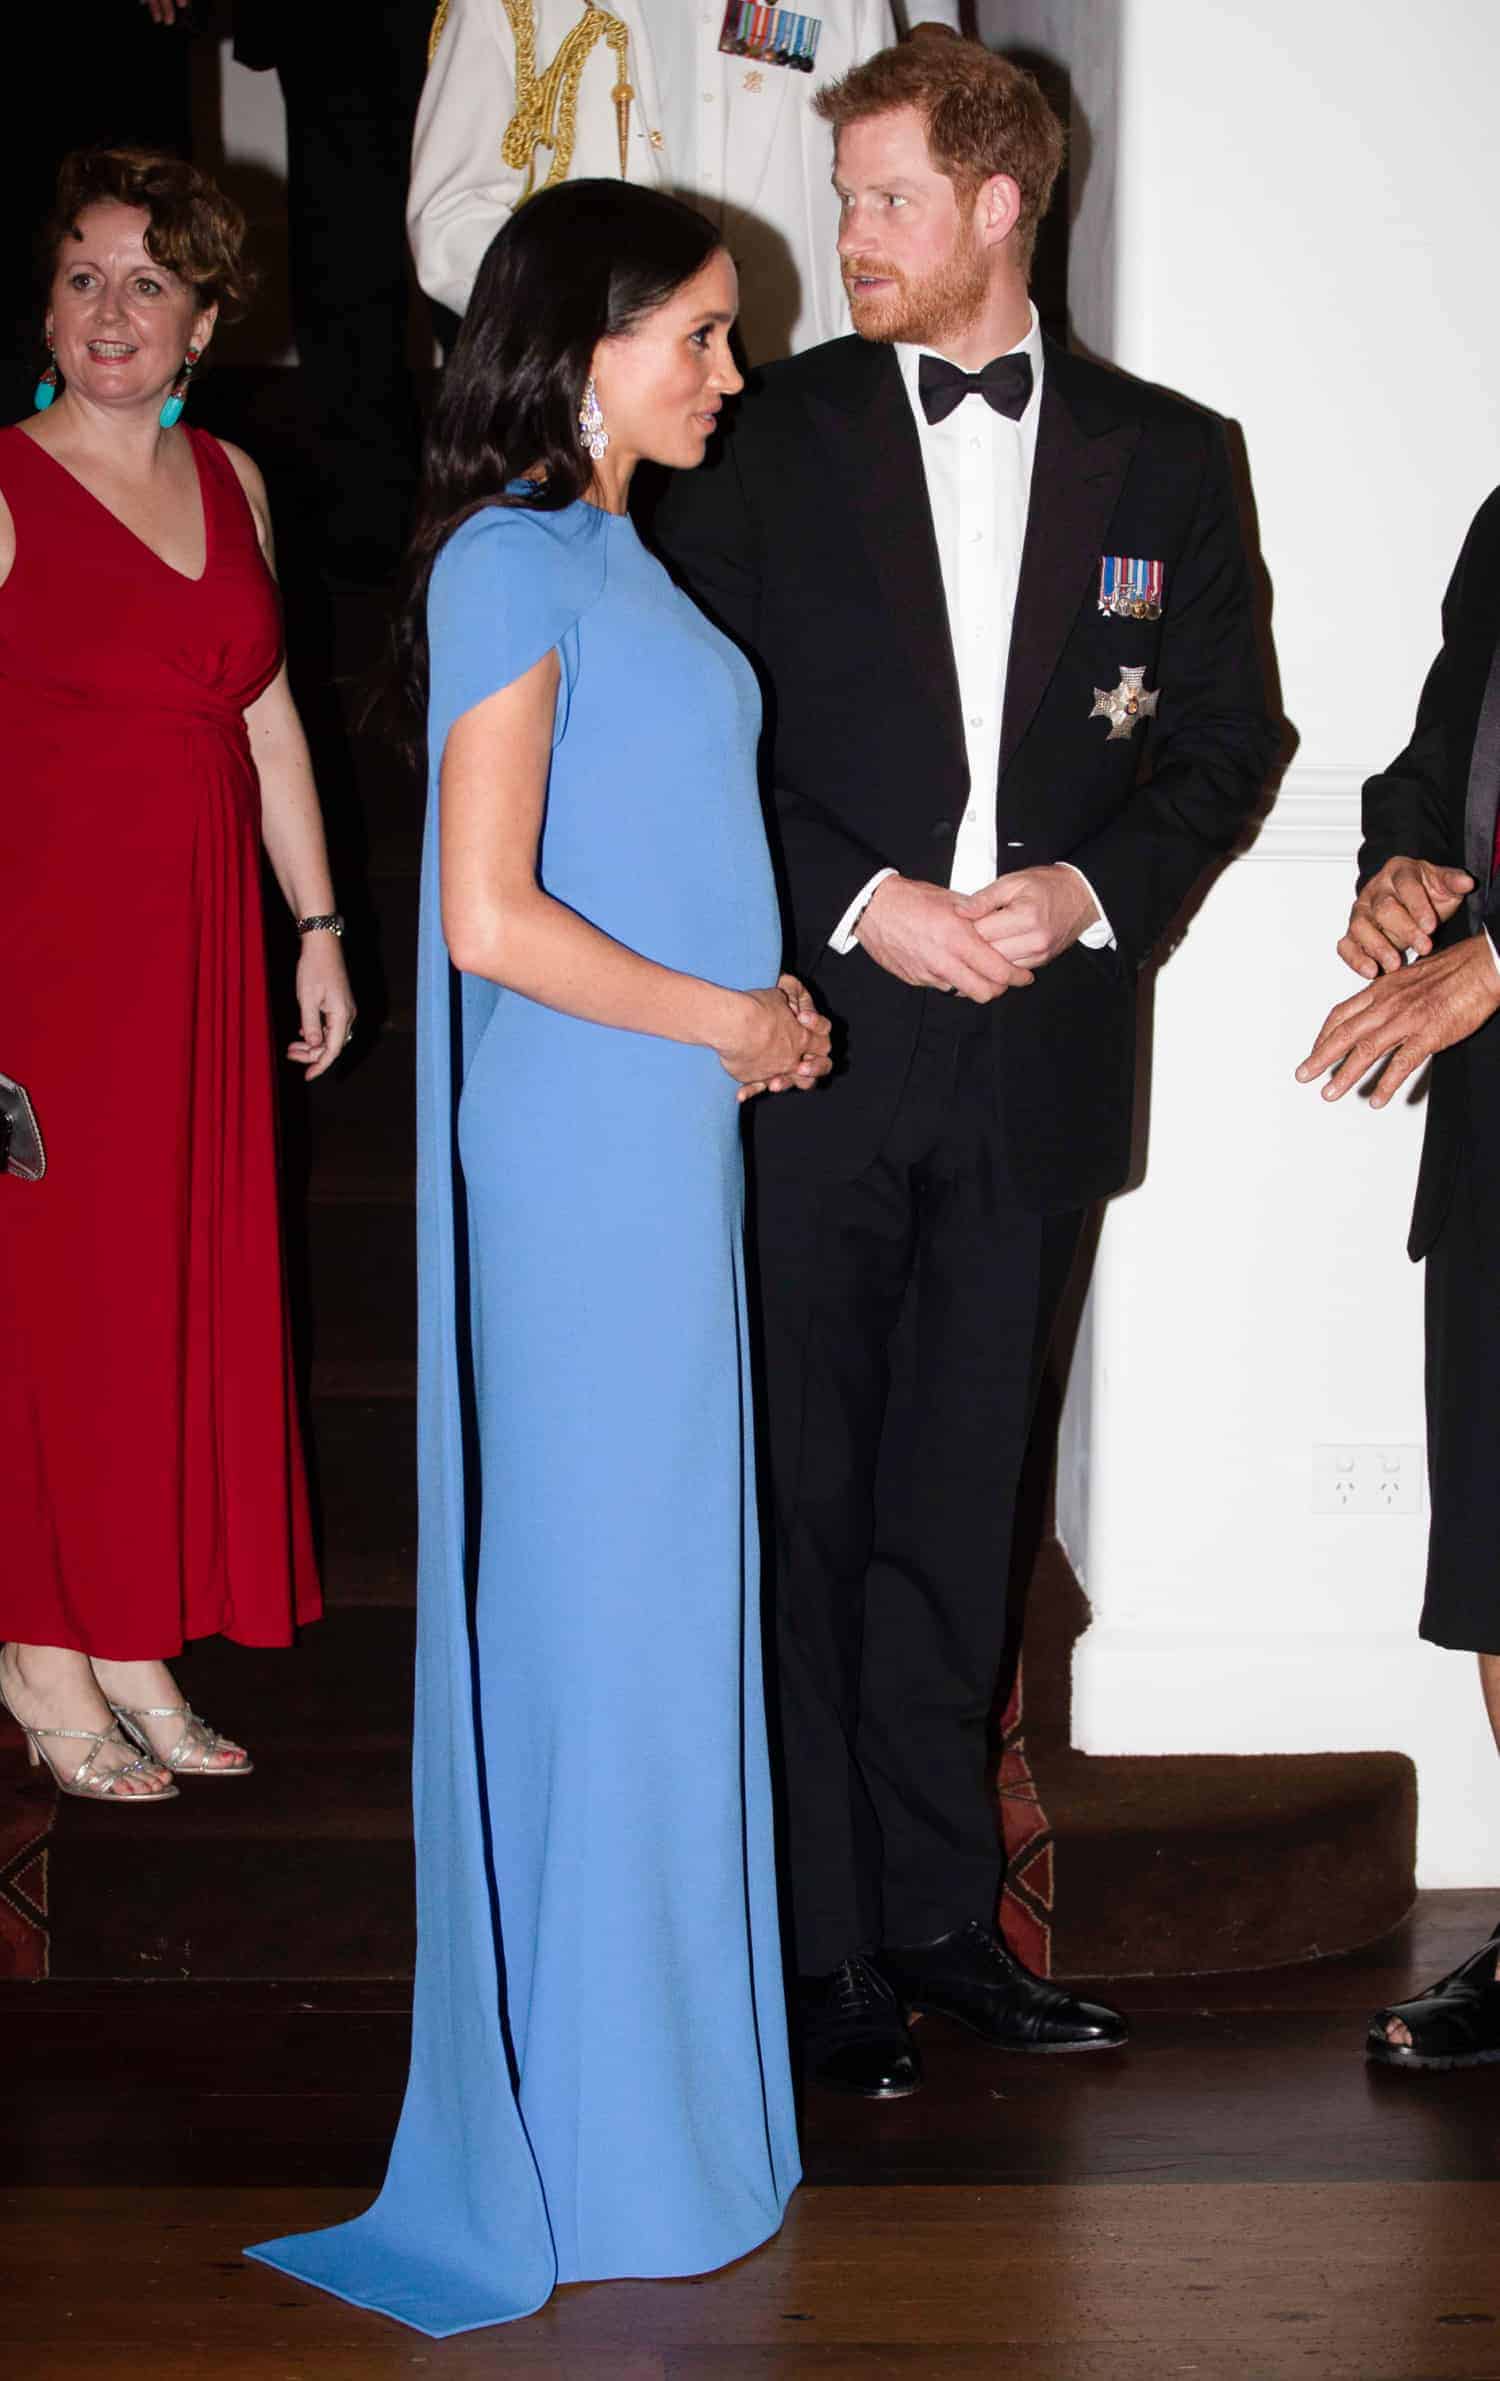 Durante evento a duquesa Meghan Markle e o príncipe Harry